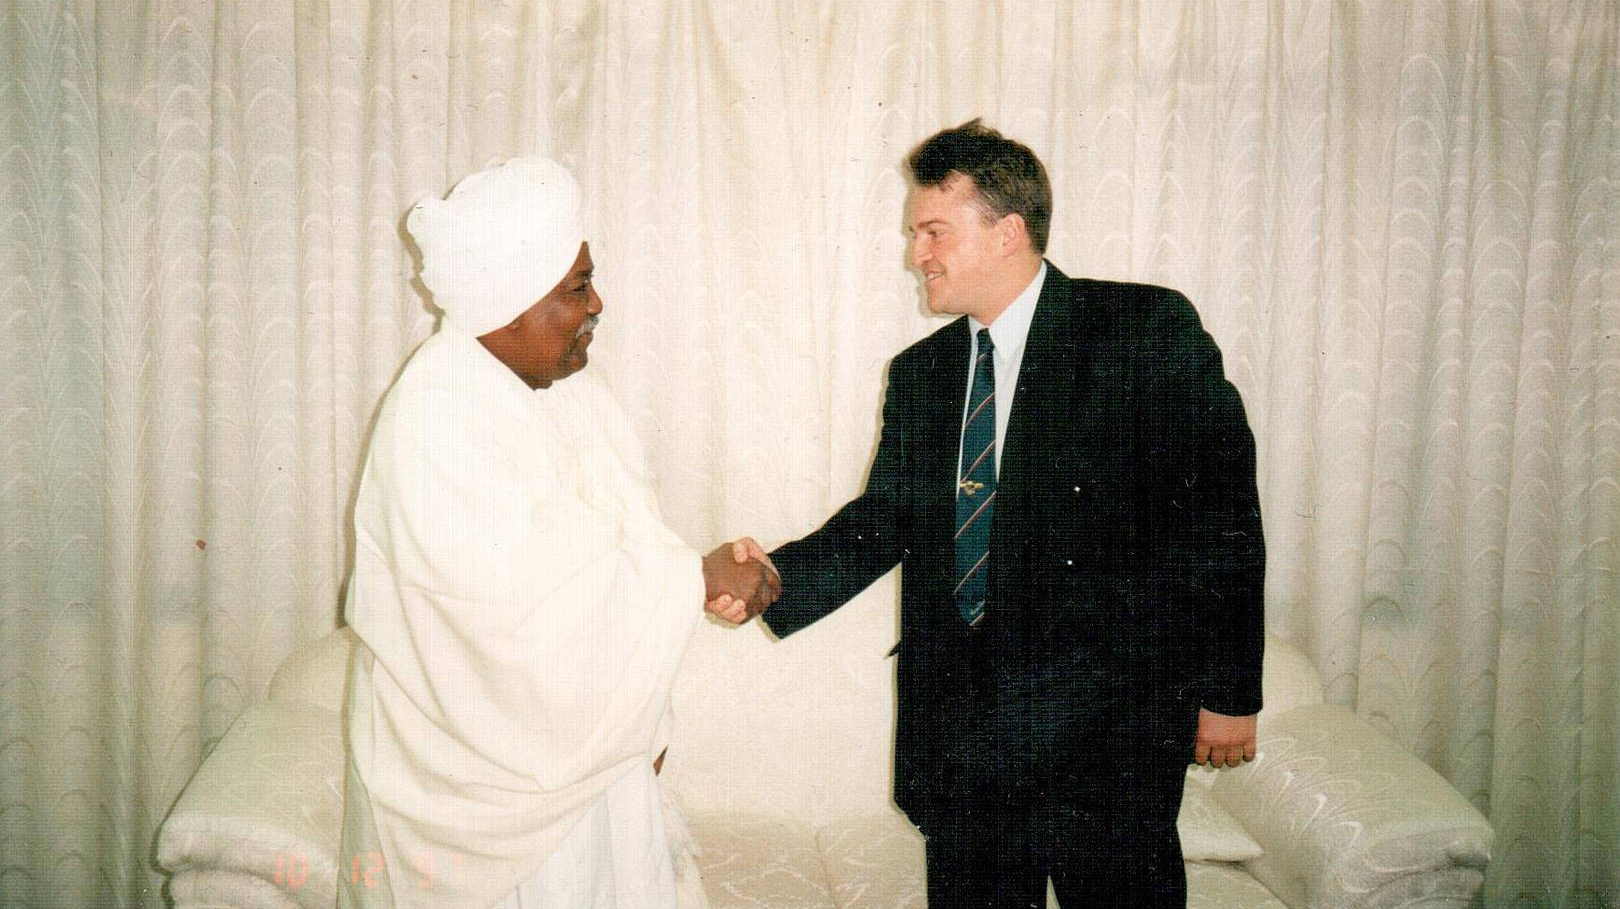 Рабочая встреча с послом Судана. Декабрь 1999 года, Ливия